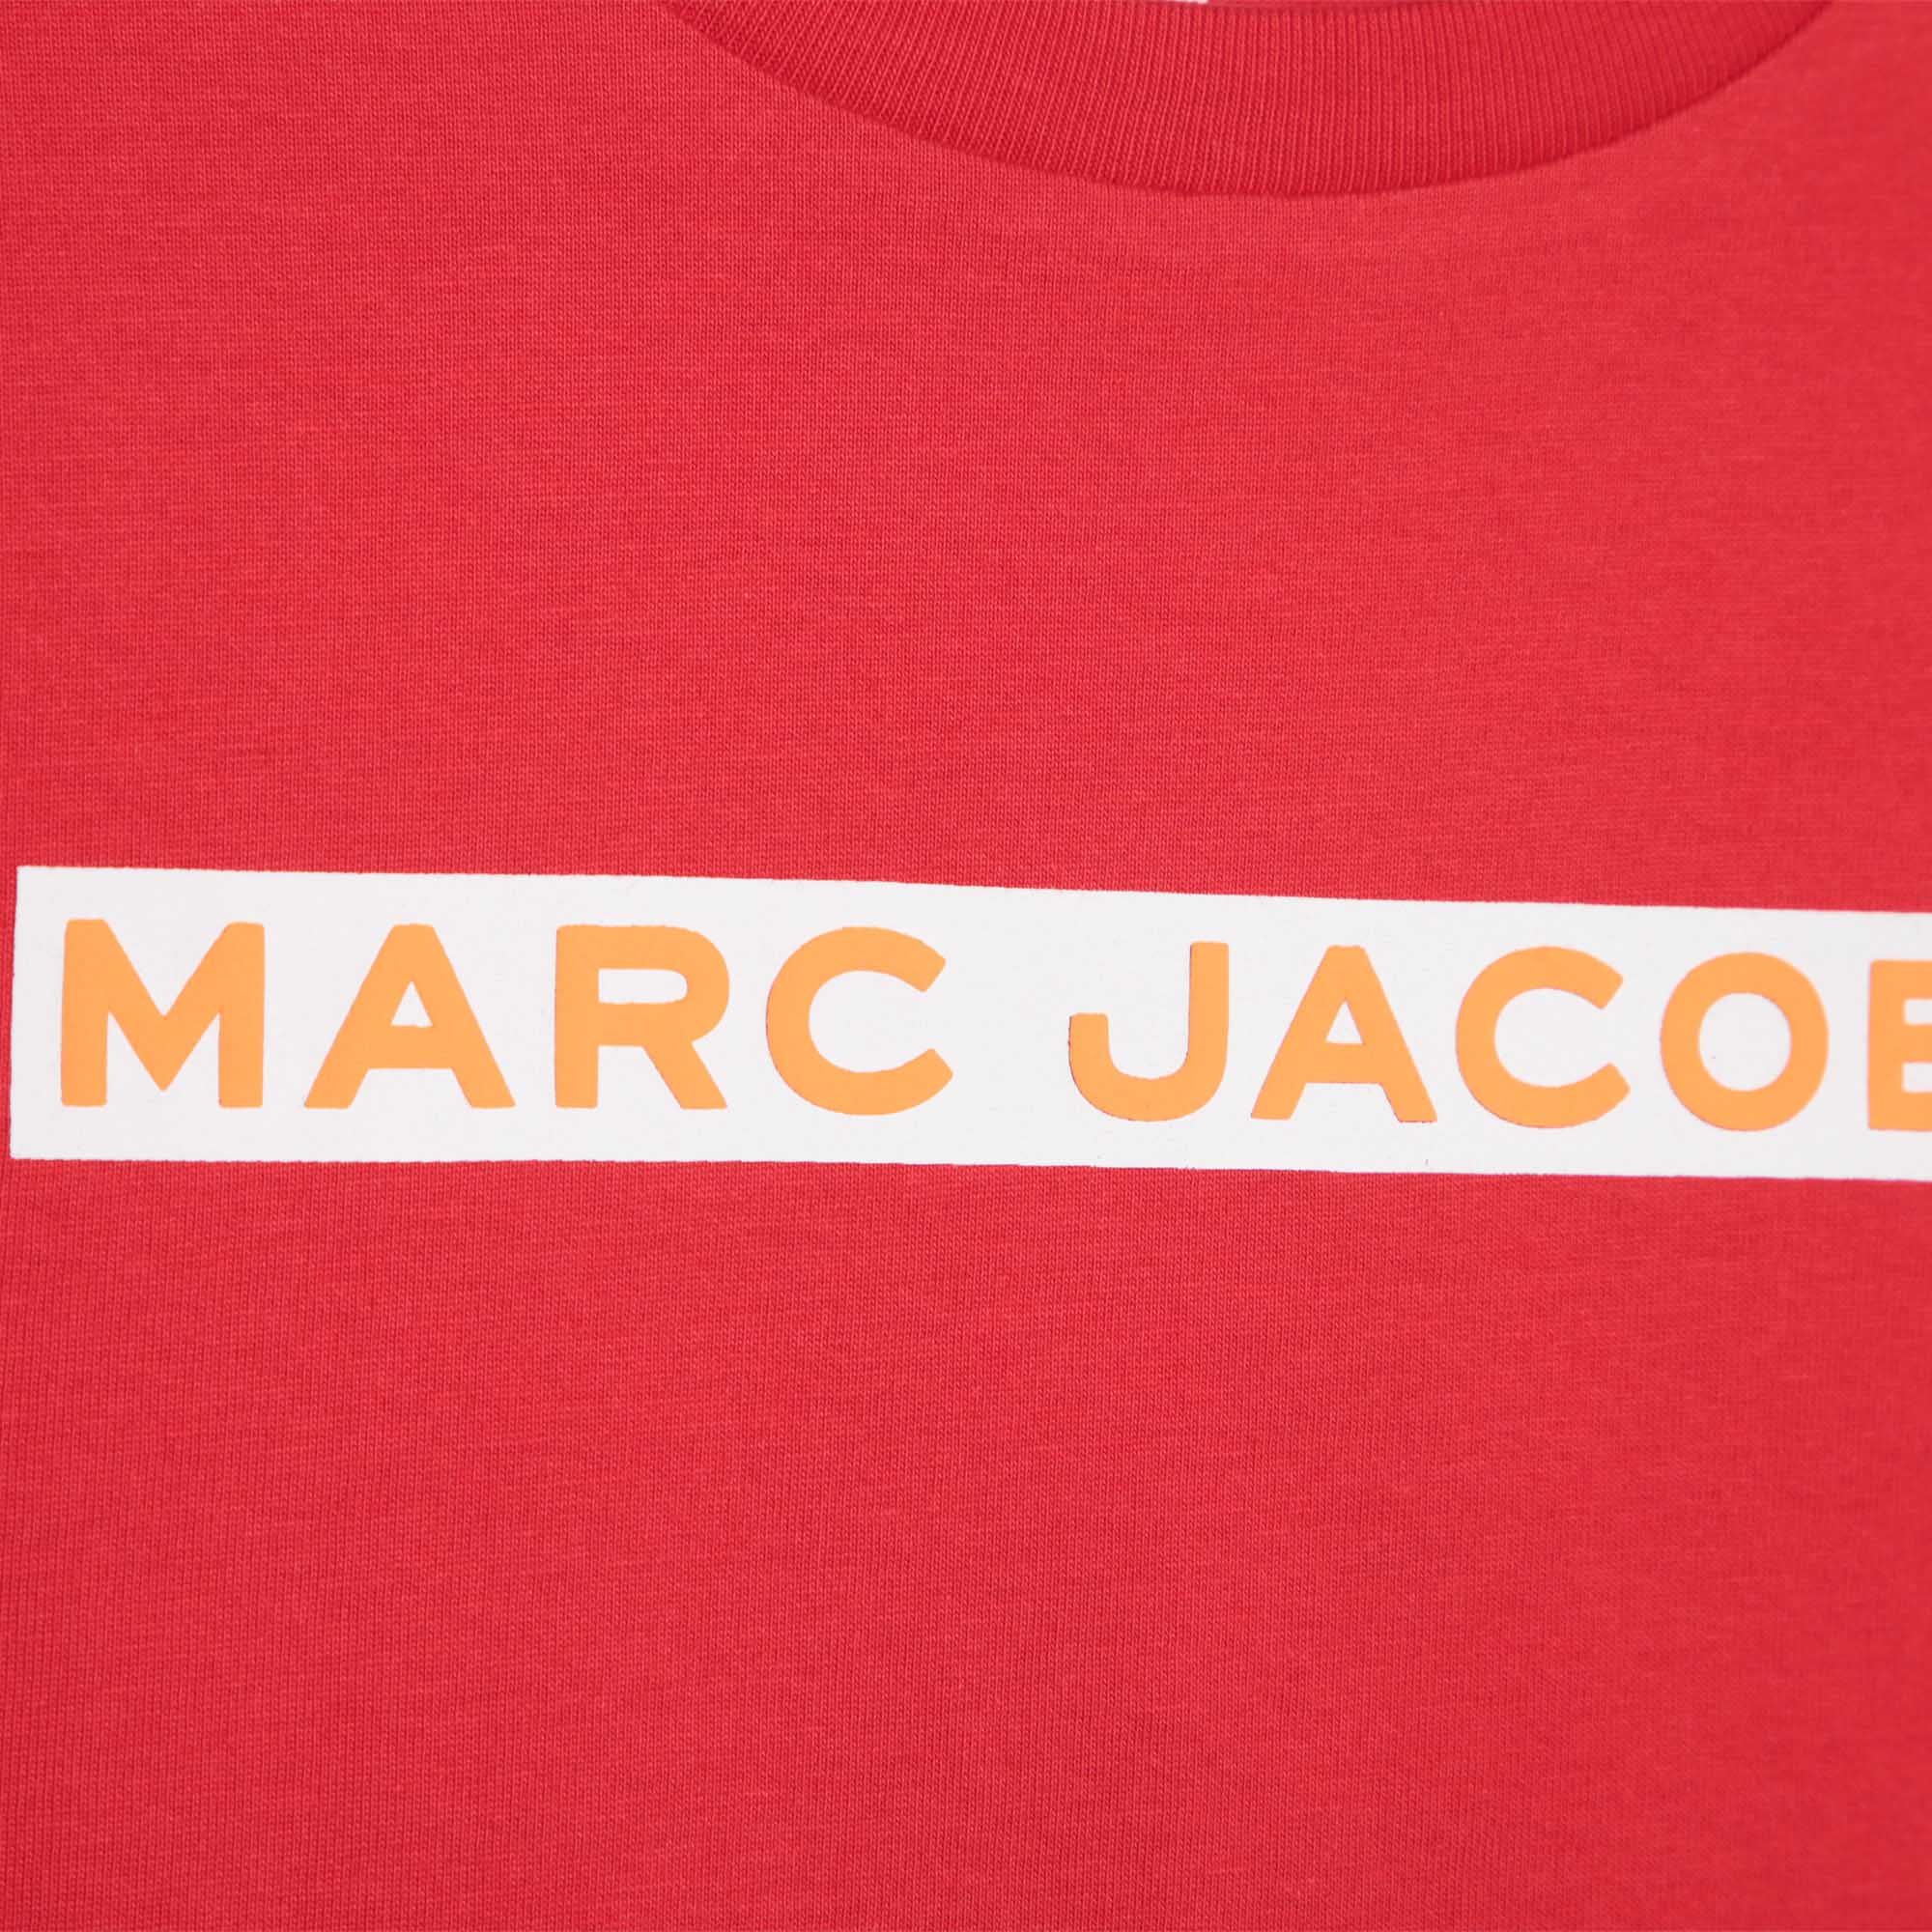 T-shirt met originele print MARC JACOBS Voor